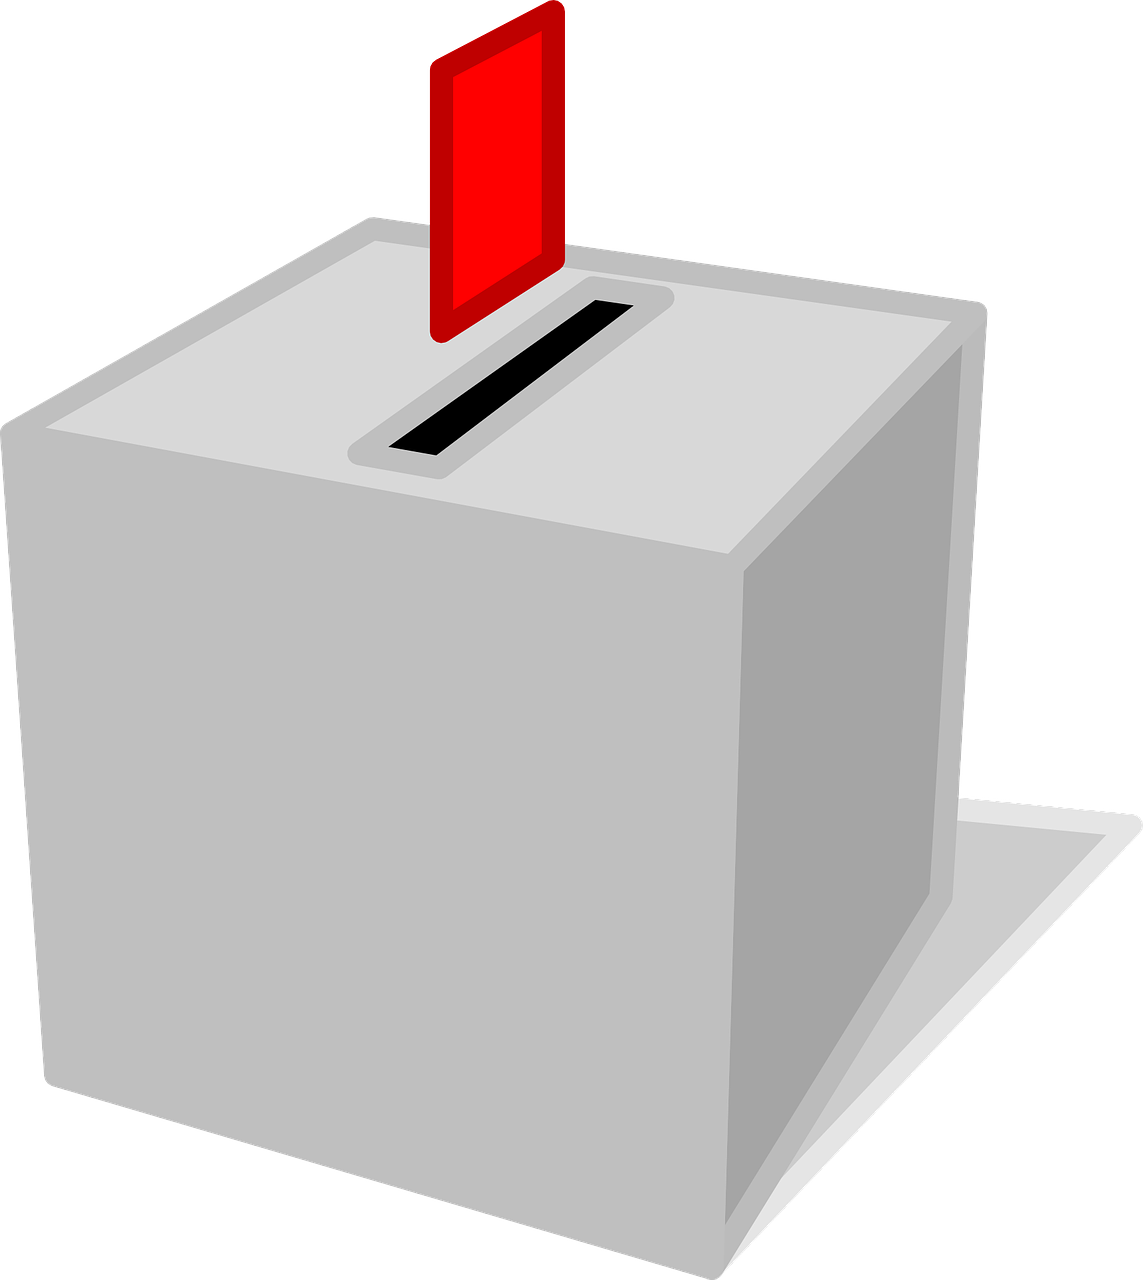 Balsavimas, Dėžė, Balsas, Balsavimas, Rinkimai, Loterija, Politika, Pasirinkimas, Referendumas, Išrinkti